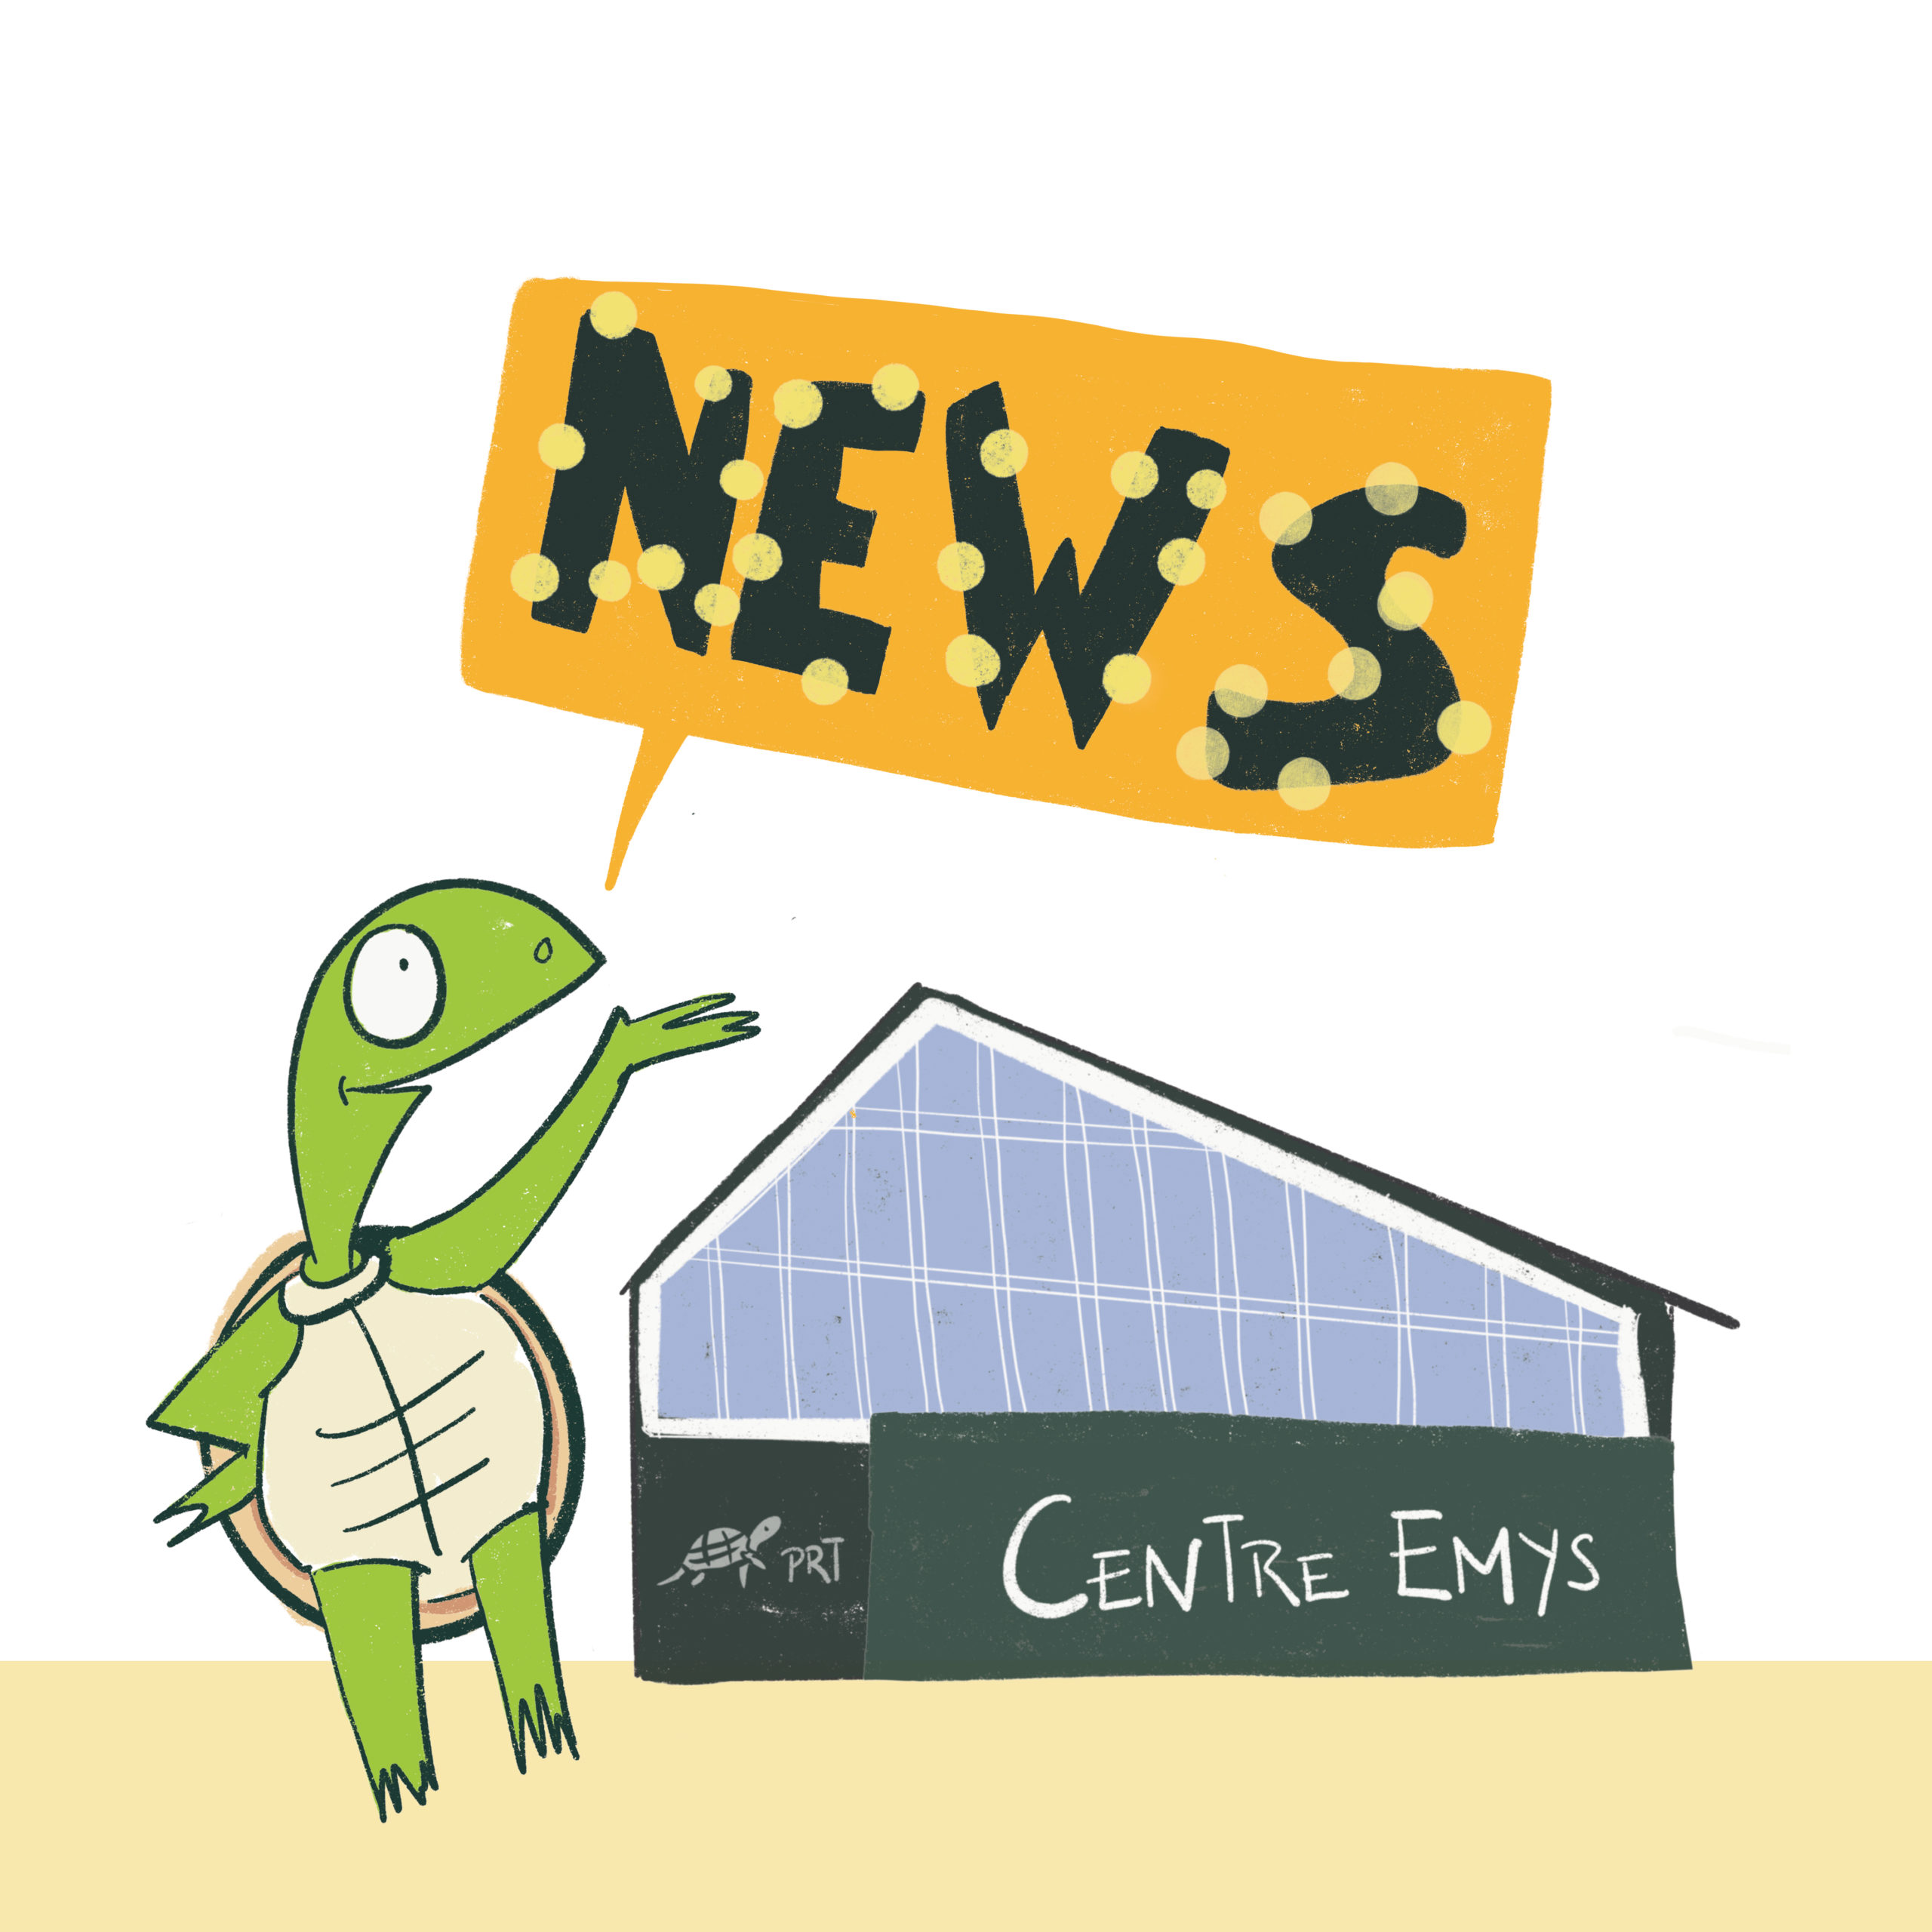 Illustration dessin de tortue Centre Emys - Visuel pour les réseaux sociaux